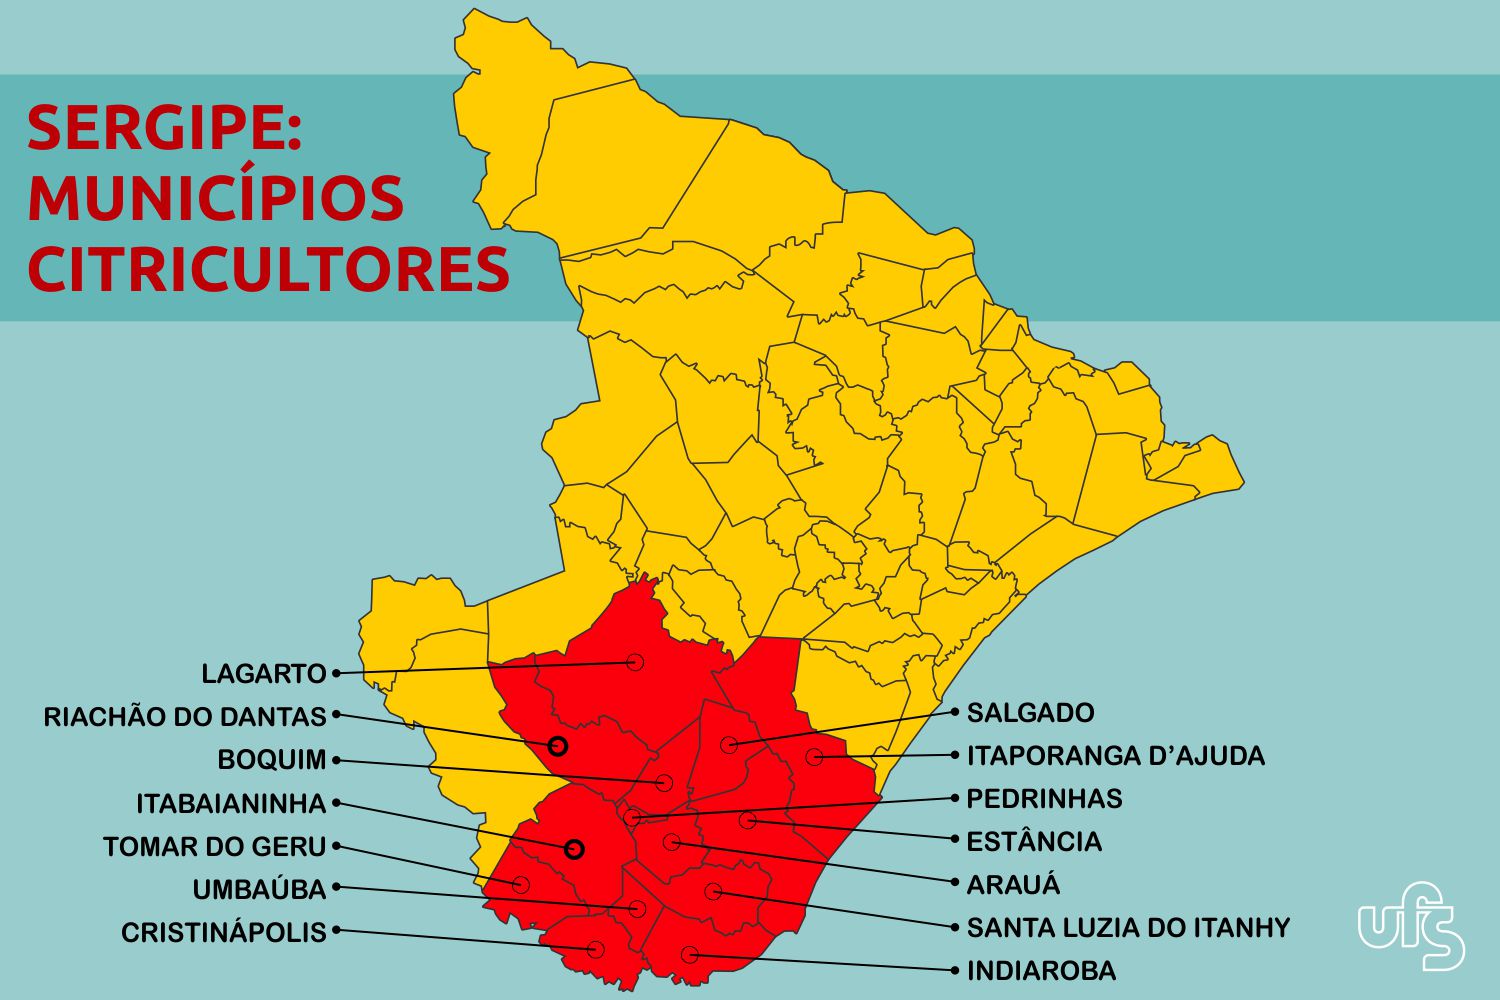 O centro-sul é a principal região citricultora de Sergipe (Fonte: trabalho da pesquisadora / Adaptado por Marcilio Costa)